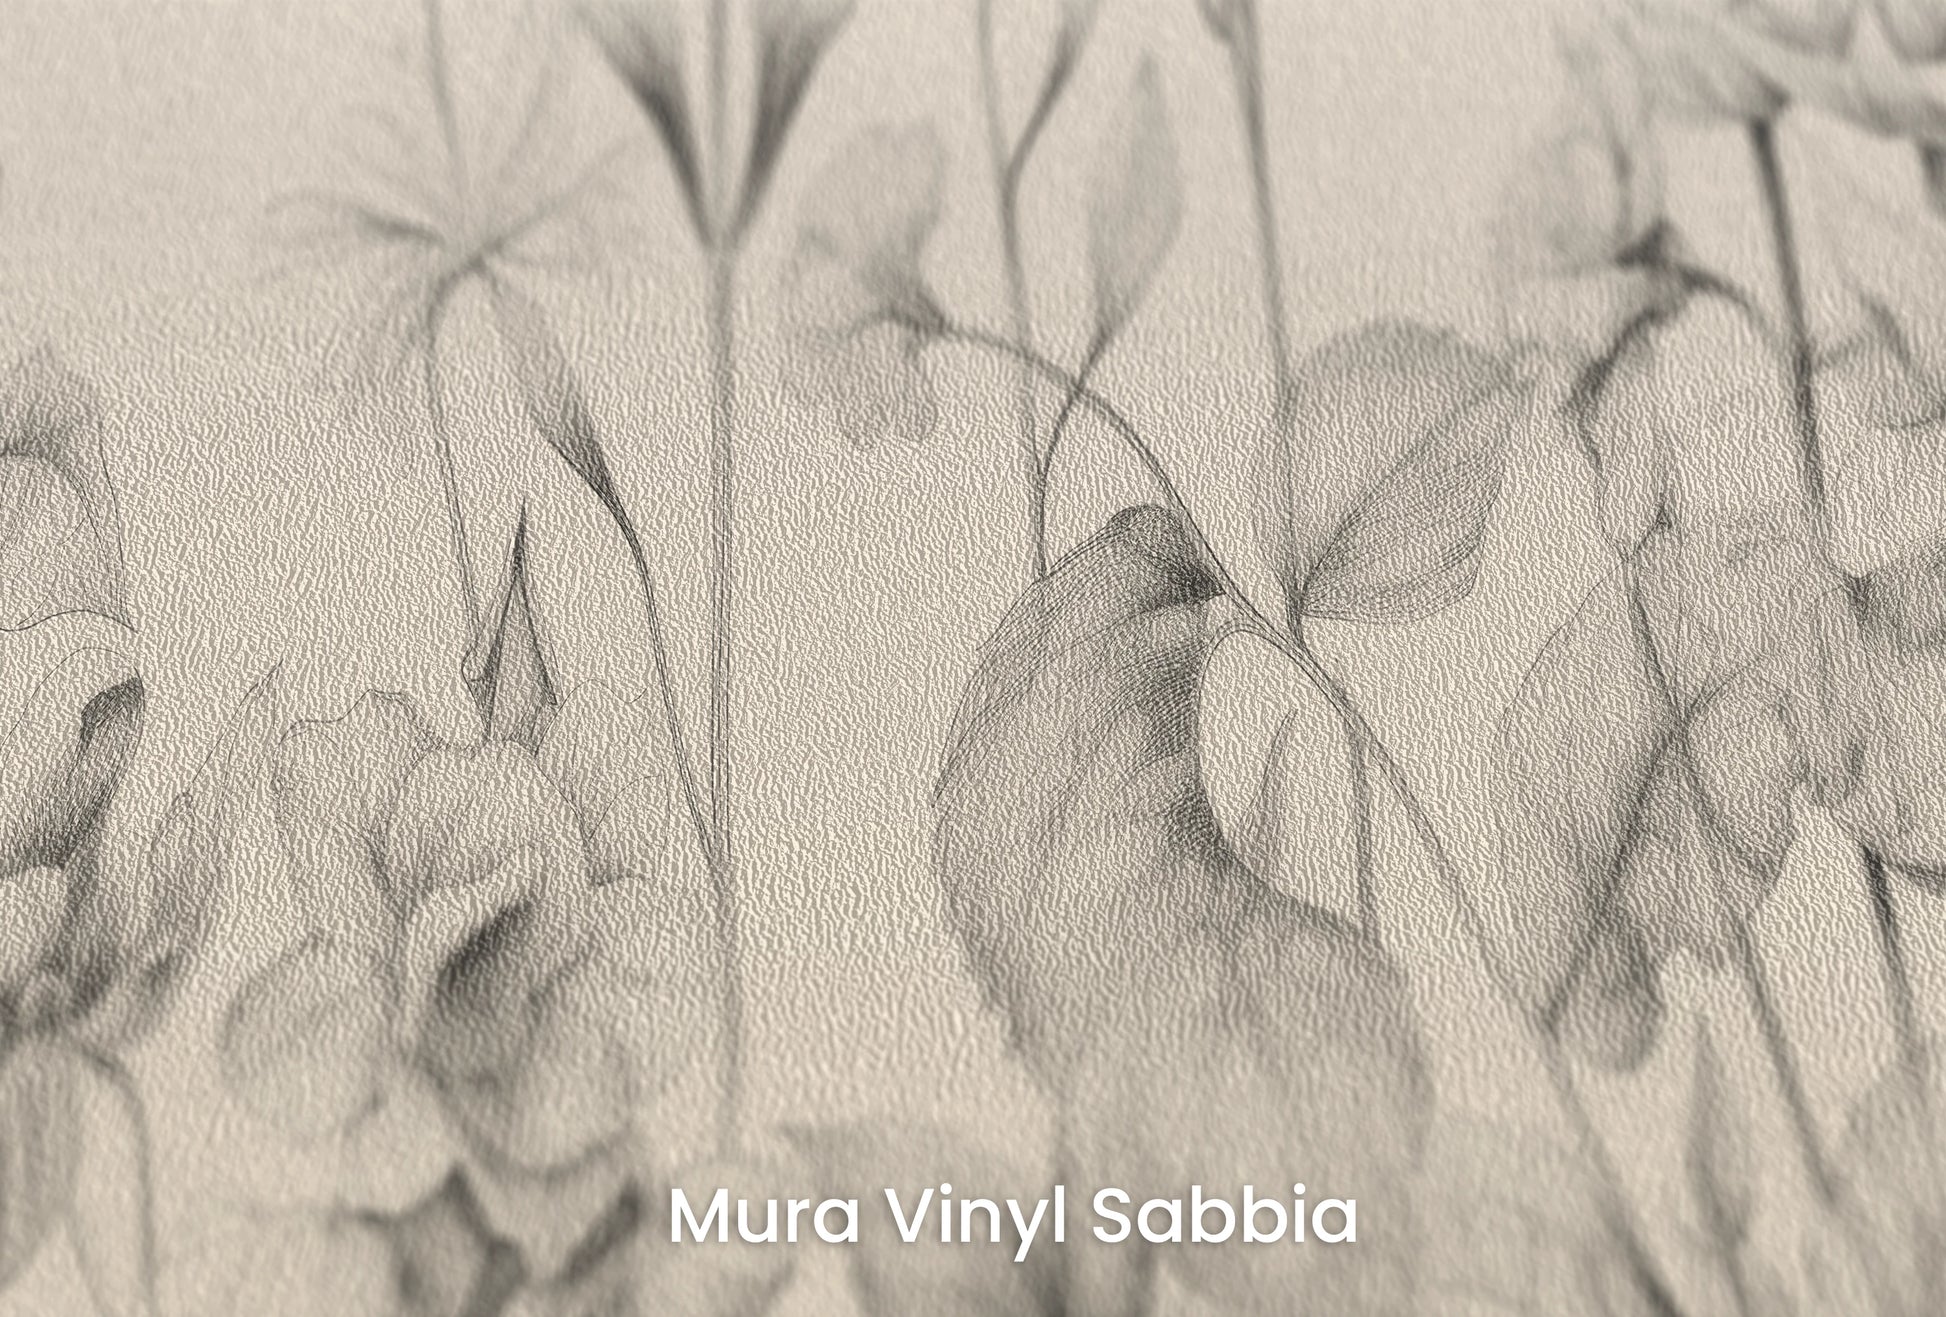 Zbliżenie na artystyczną fototapetę o nazwie Ethereal Bloom na podłożu Mura Vinyl Sabbia struktura grubego ziarna piasku.